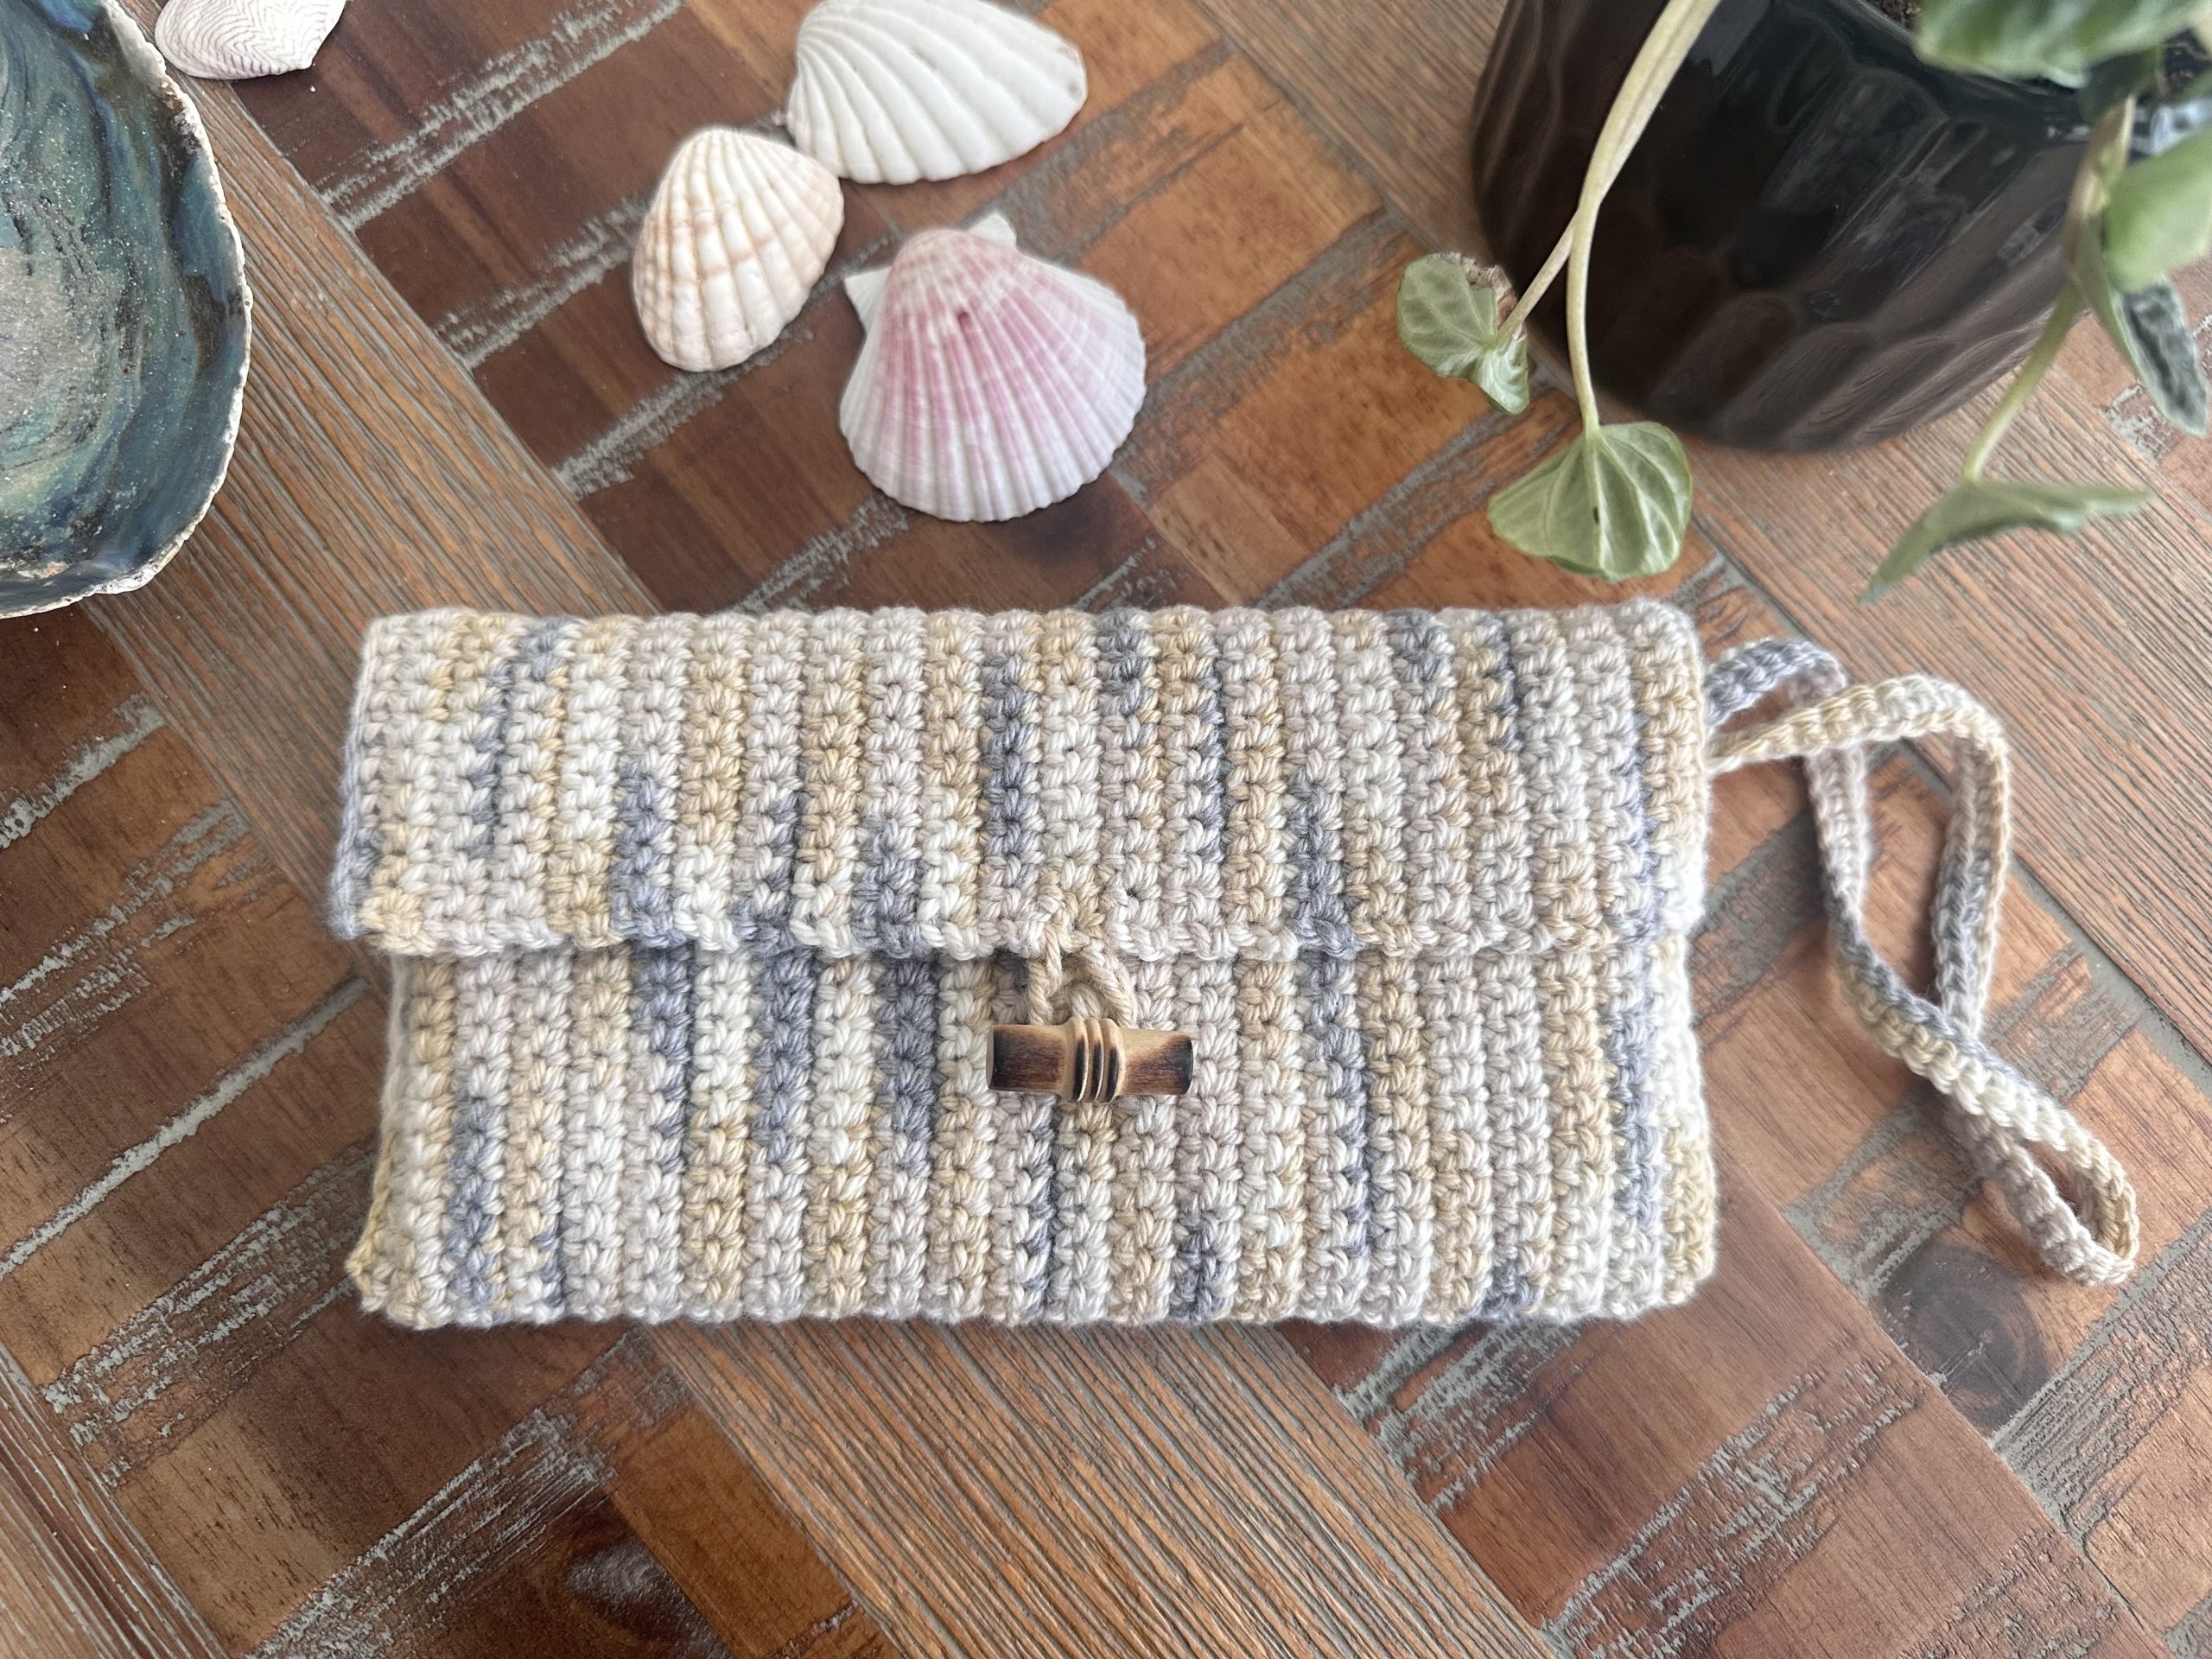 Crochet Clutch Bag Free Pattern - Carroway Crochet